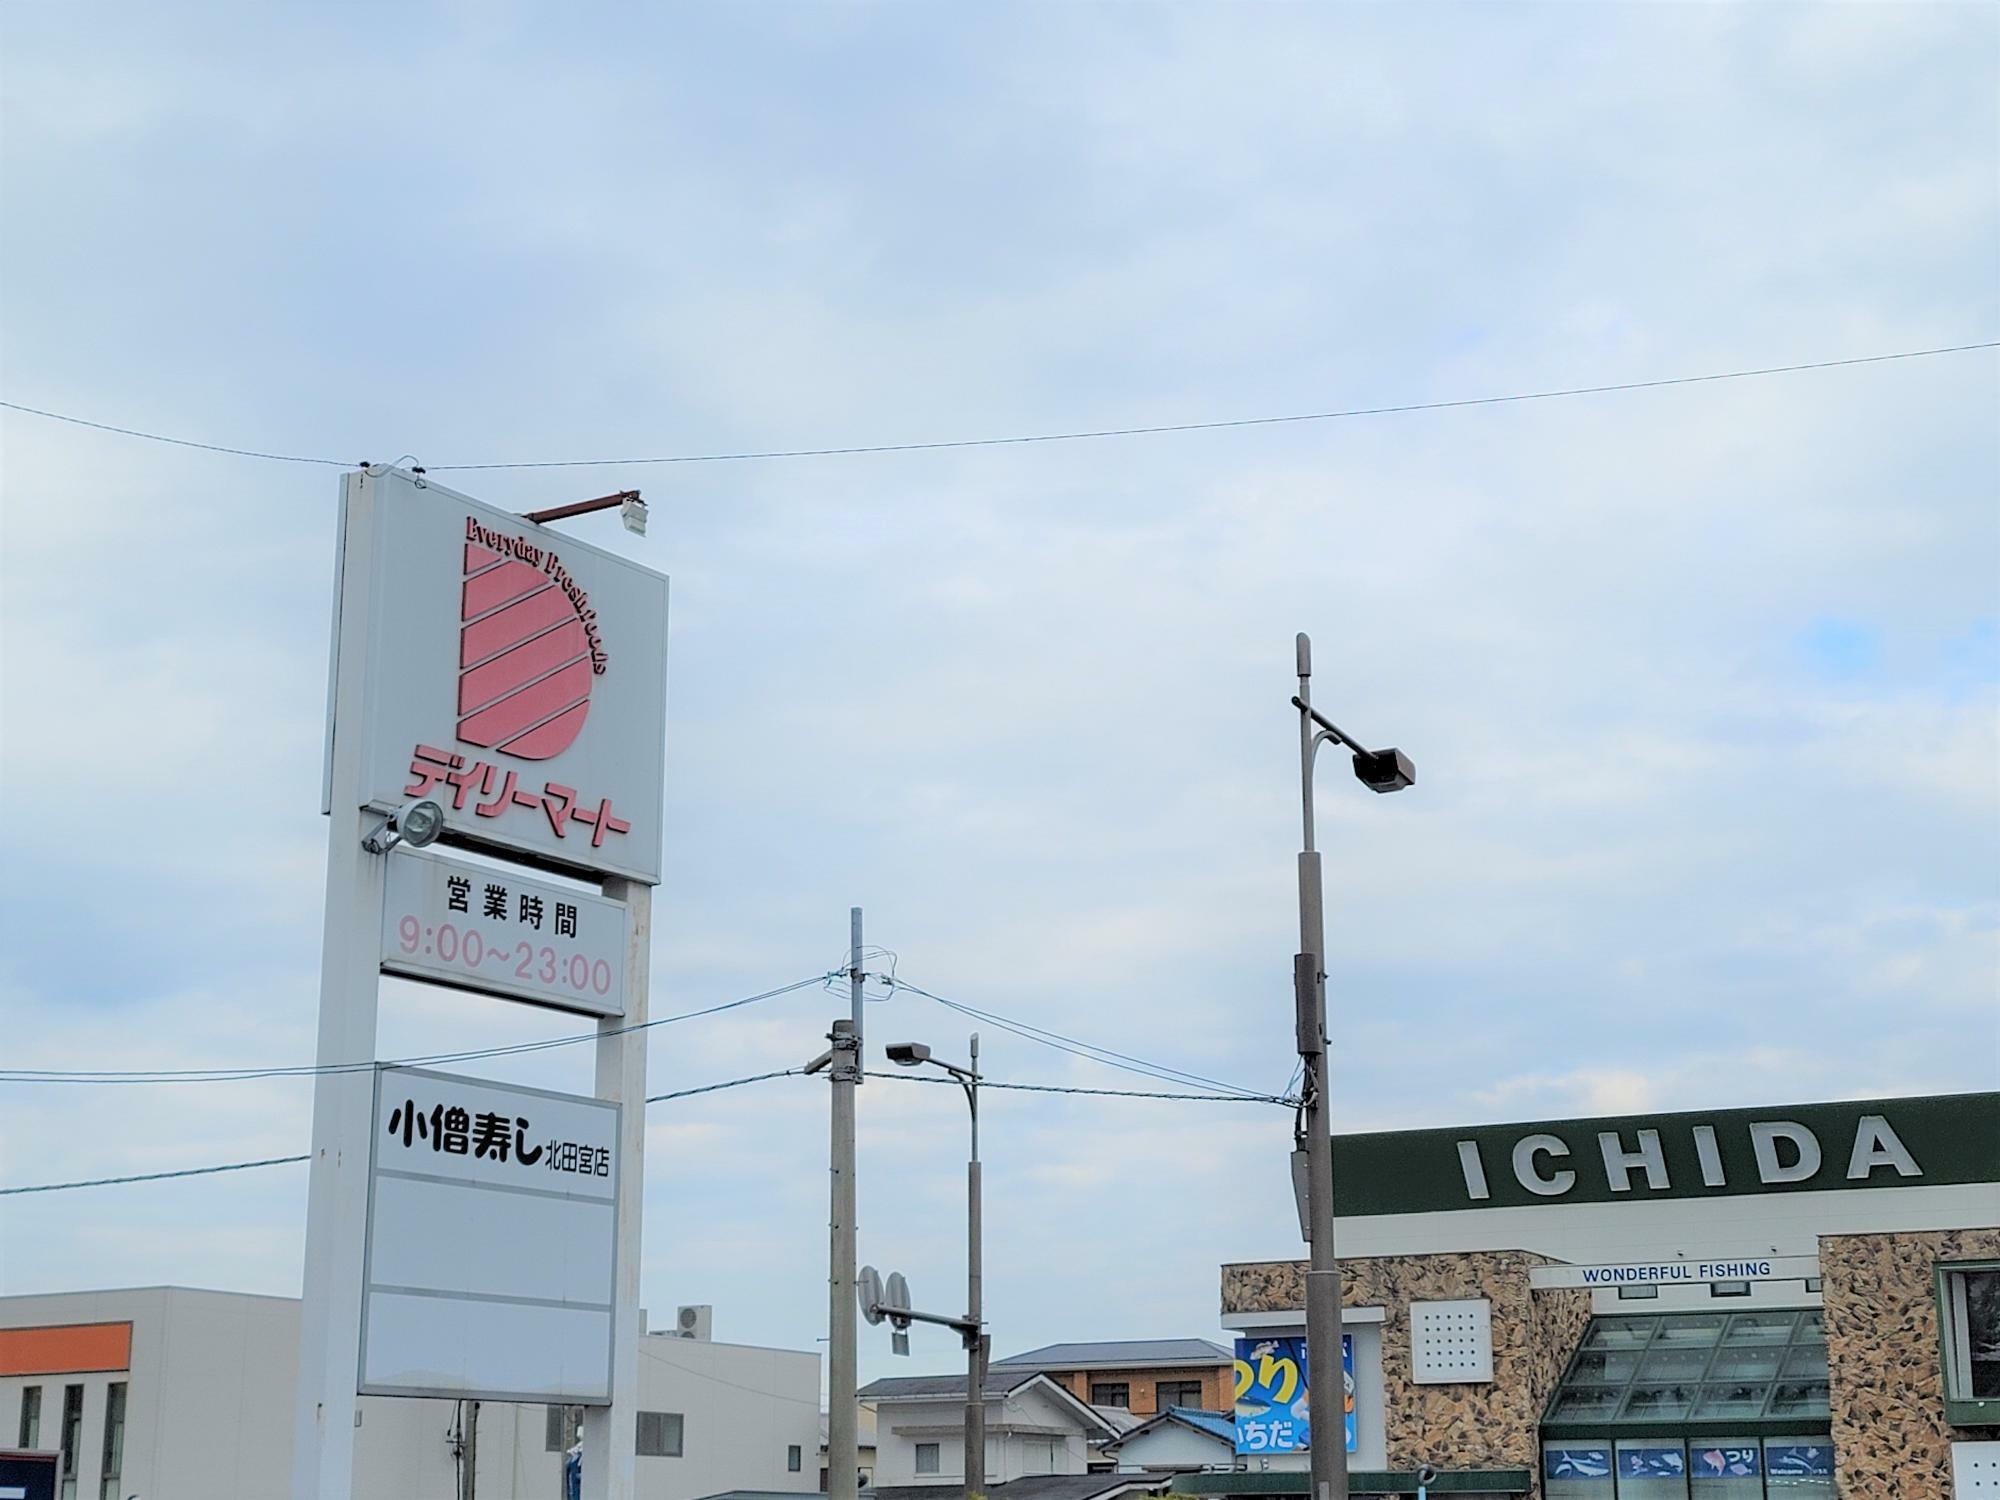 「デイリーマート 田宮店」の看板と釣具店「ICHIDA」の店舗